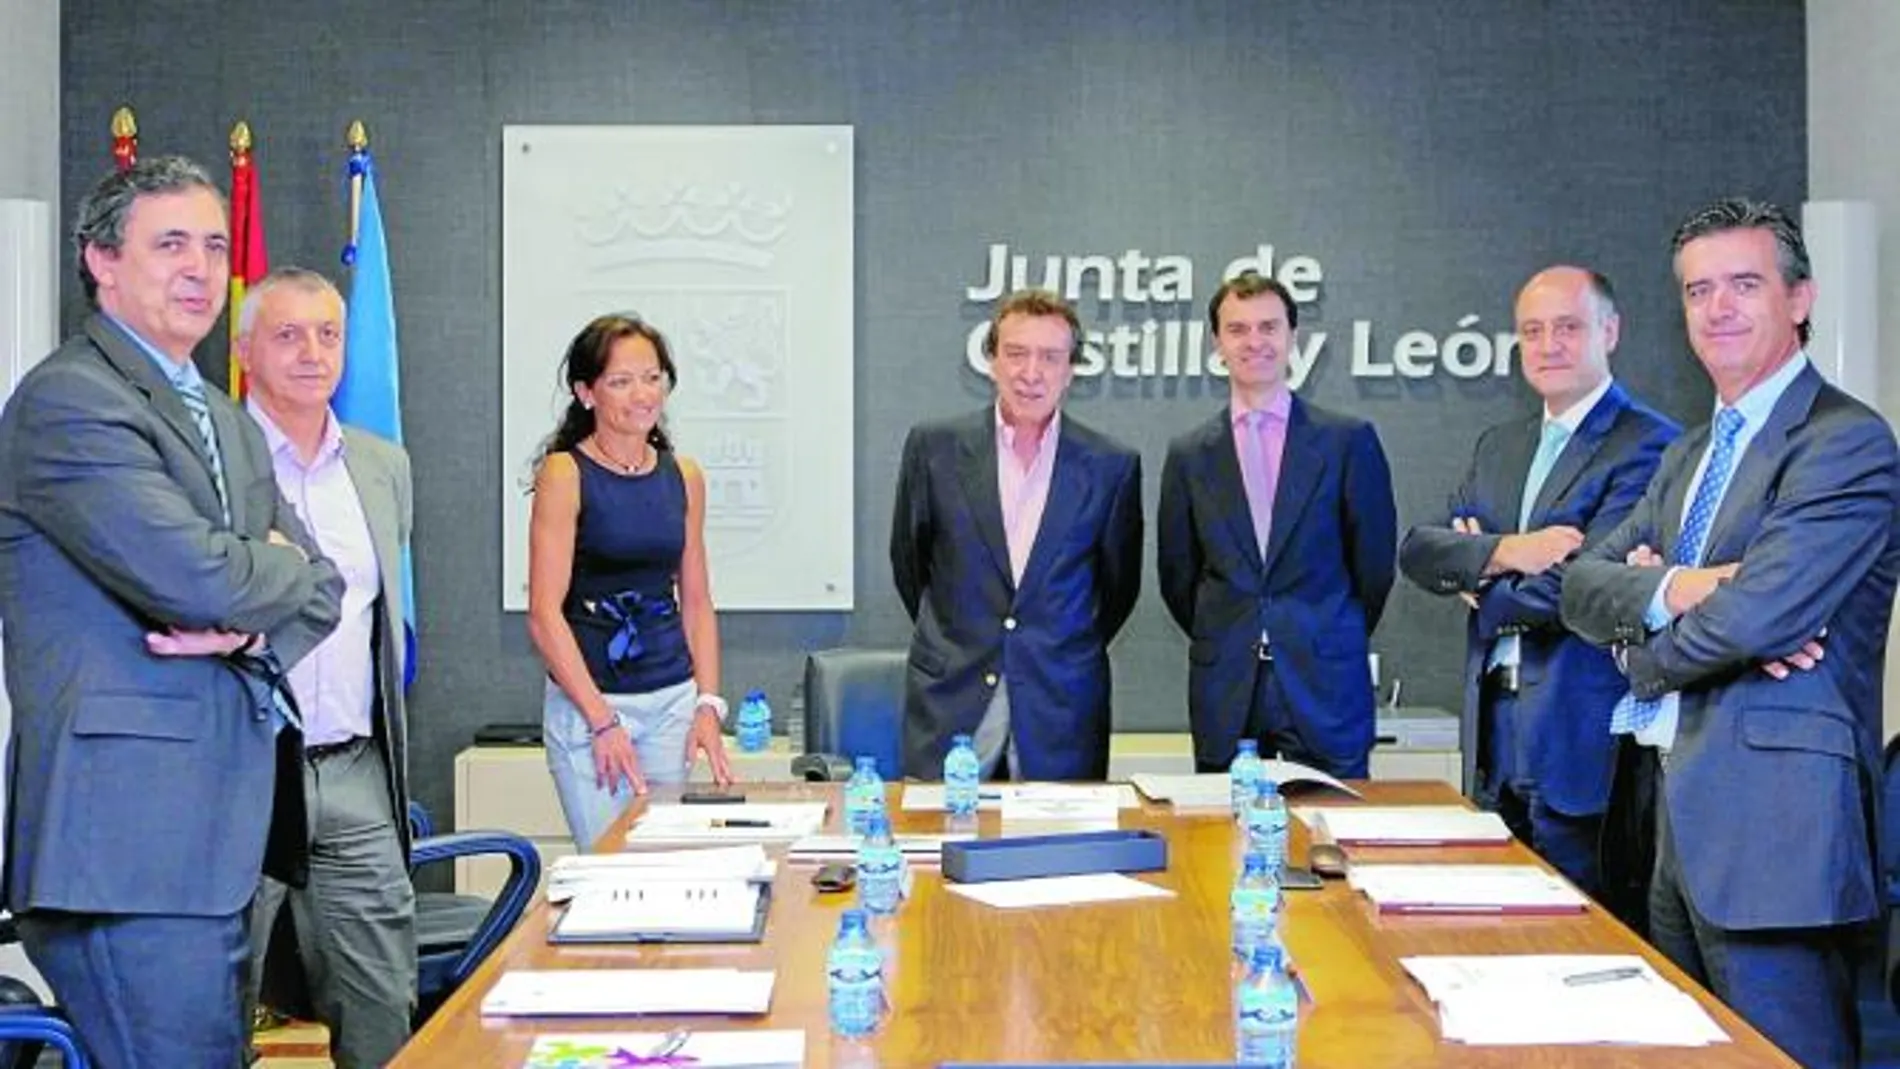 José Antonio de Santiago-Juárez preside el Patronato de la Fundación de Cooperación y Ciudadanía